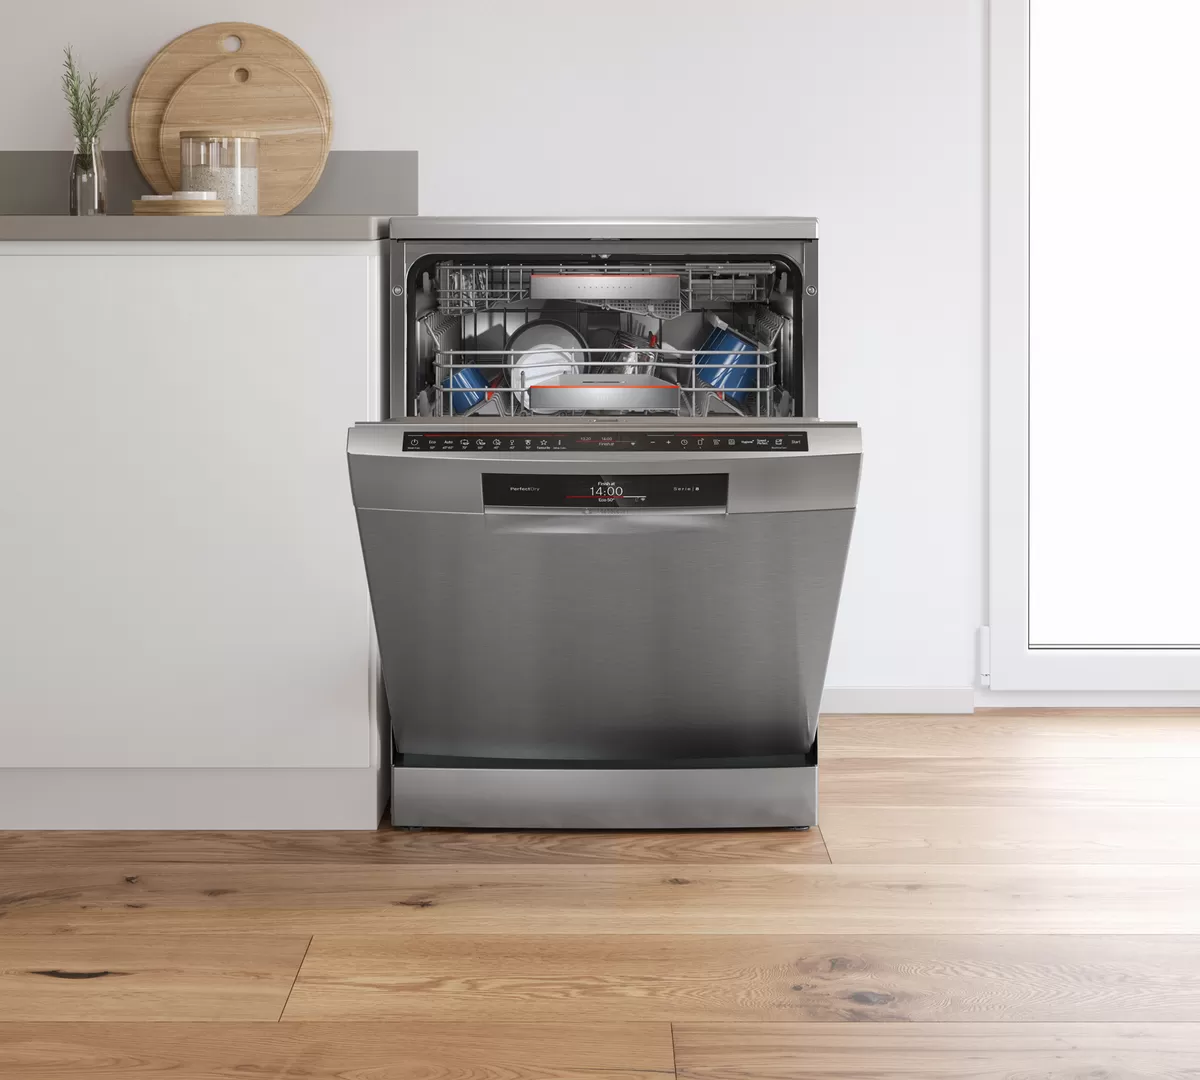 Встроенная посудомойка 45 см рейтинг. Посудомоечная машина Bosch 60 отдельностоящая. Посудомойка Bosch 60 отдельностоящая. Посудомоечная машина Bosch 60 встраиваемая. Посудомоечная машина бош 60 посудомоечная встраиваемая.